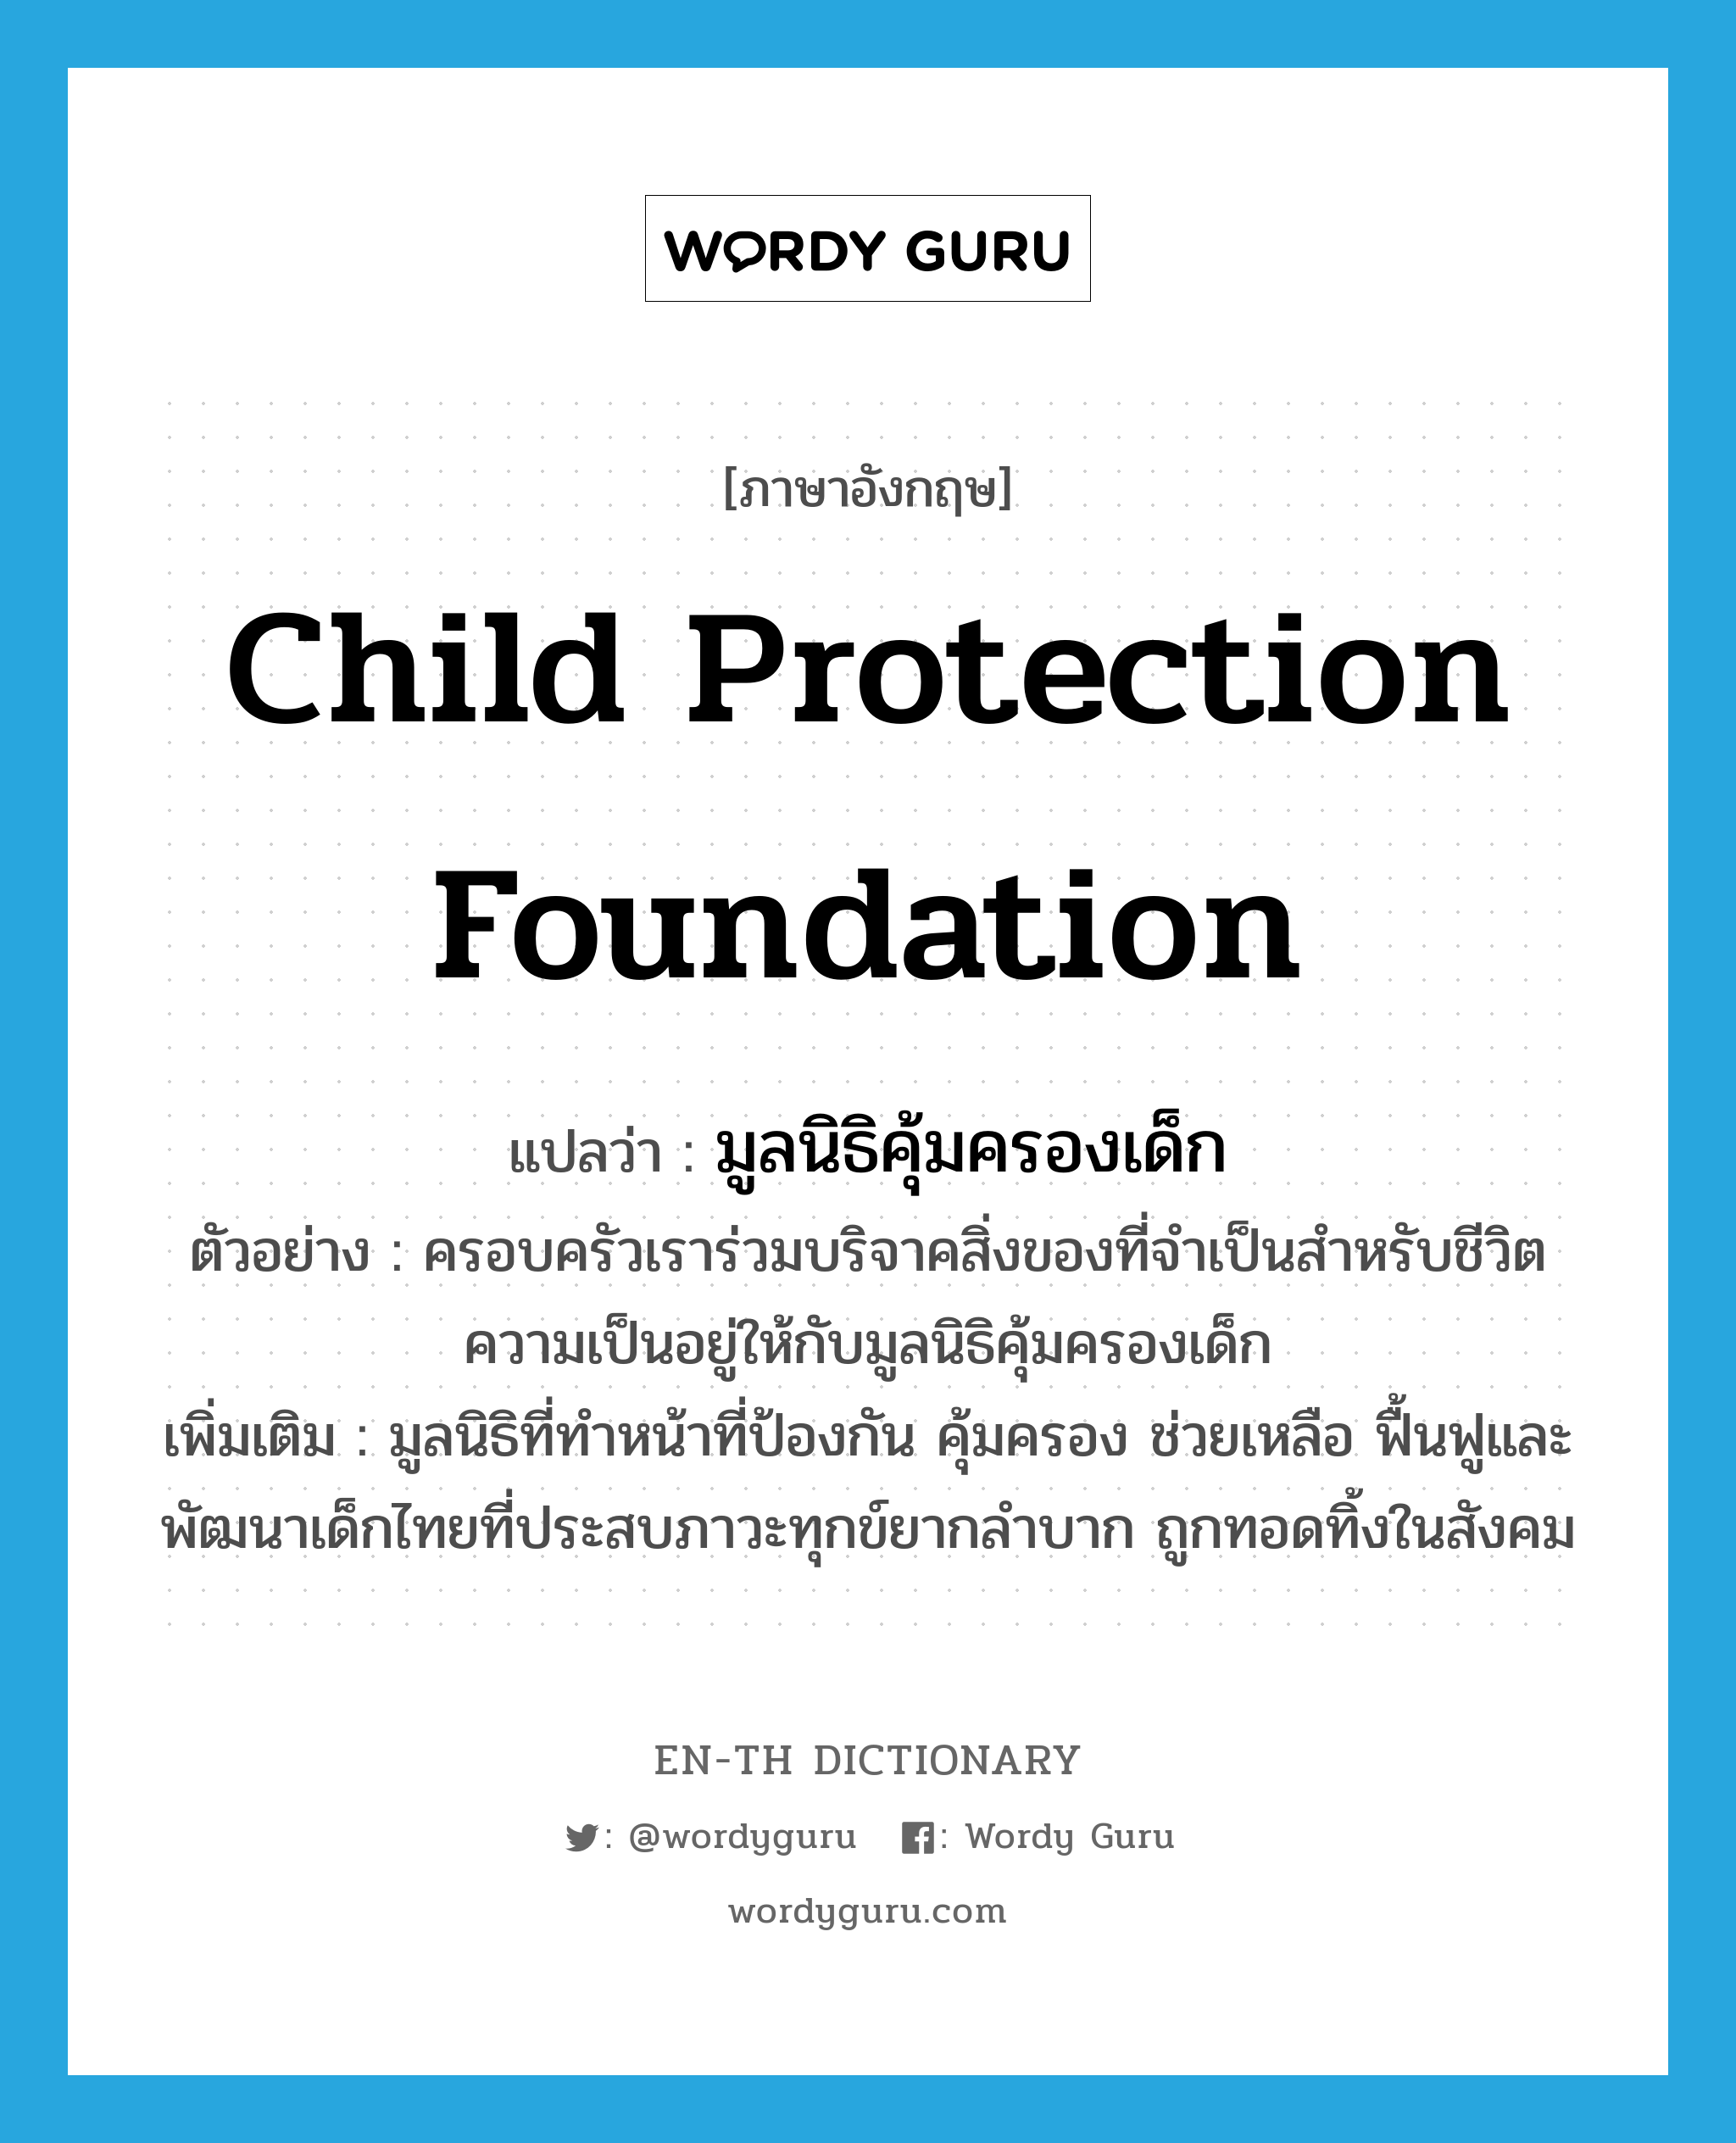 มูลนิธิคุ้มครองเด็ก ภาษาอังกฤษ?, คำศัพท์ภาษาอังกฤษ มูลนิธิคุ้มครองเด็ก แปลว่า Child Protection Foundation ประเภท N ตัวอย่าง ครอบครัวเราร่วมบริจาคสิ่งของที่จำเป็นสำหรับชีวิตความเป็นอยู่ให้กับมูลนิธิคุ้มครองเด็ก เพิ่มเติม มูลนิธิที่ทำหน้าที่ป้องกัน คุ้มครอง ช่วยเหลือ ฟื้นฟูและพัฒนาเด็กไทยที่ประสบภาวะทุกข์ยากลำบาก ถูกทอดทิ้งในสังคม หมวด N